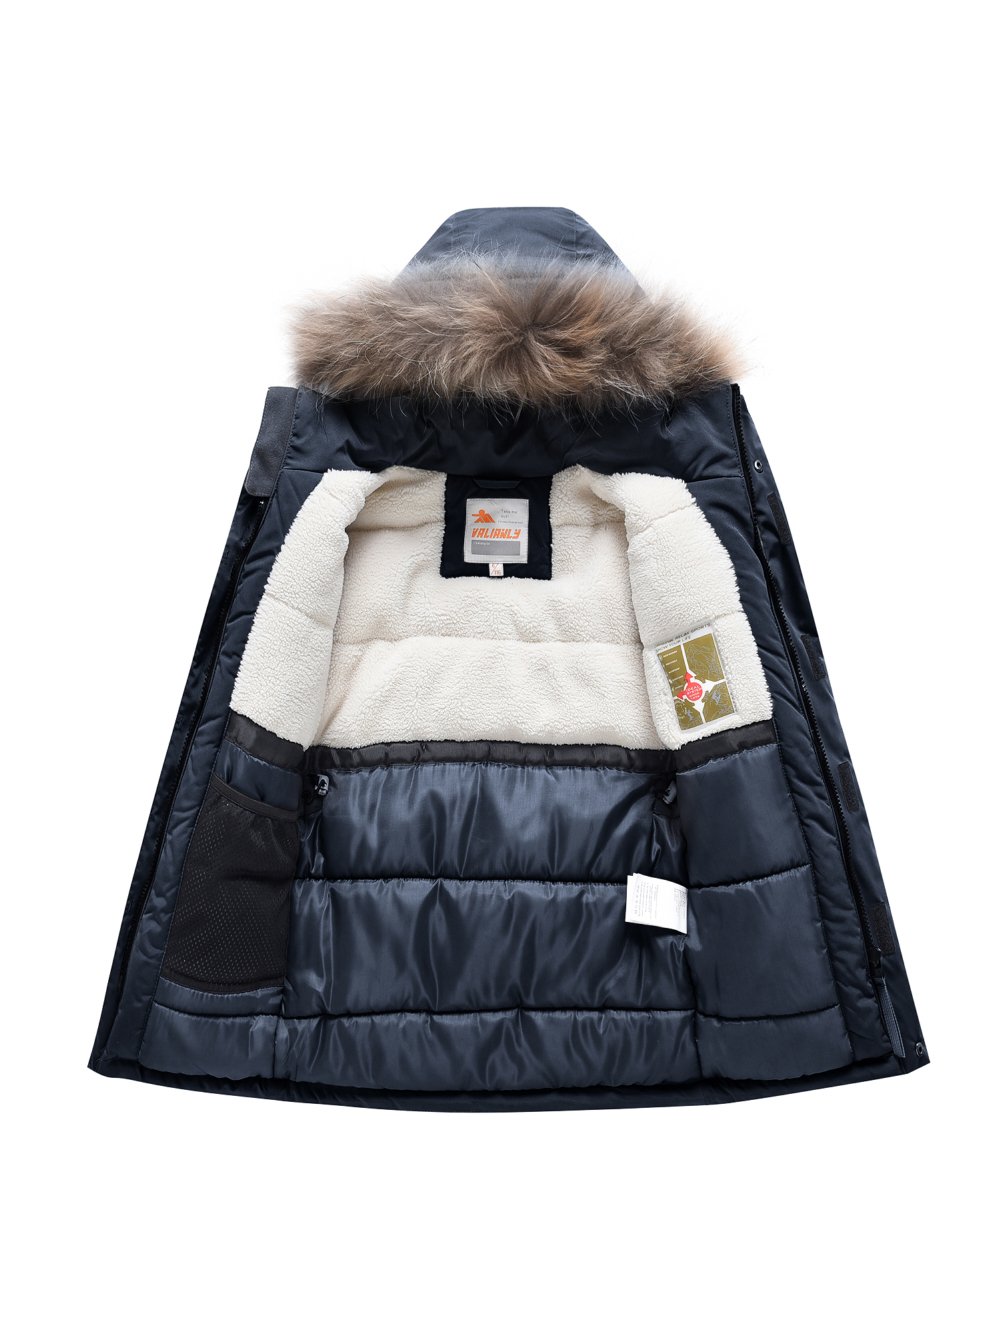 Купить куртку парку для мальчика оптом от производителя недорого в Москве 9331TS 1